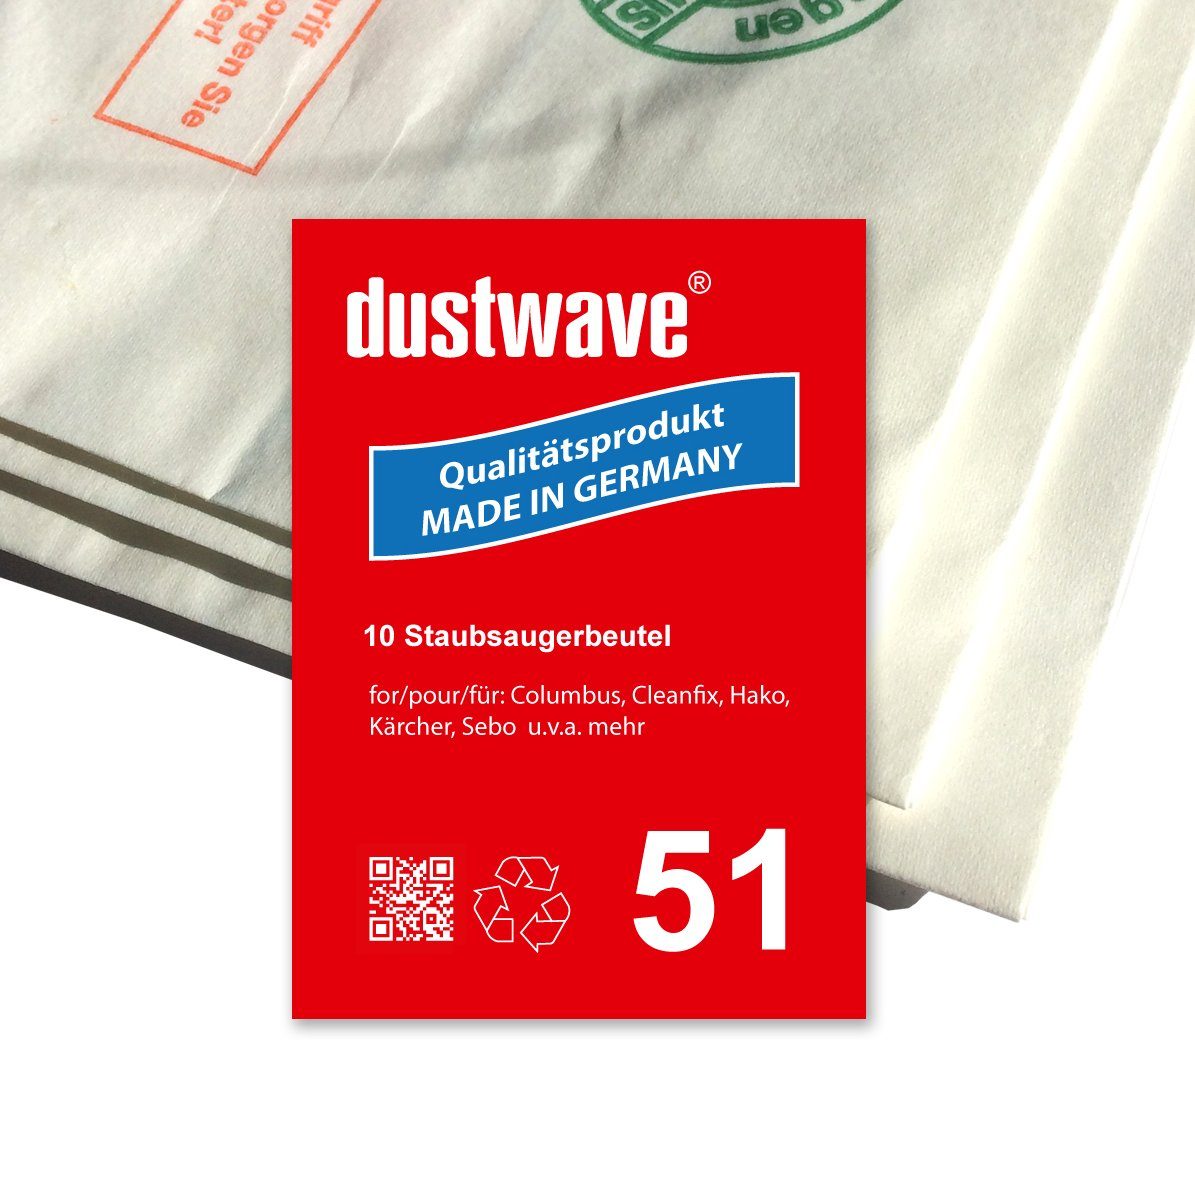 Dustwave Staubsaugerbeutel Sparpack, passend für Columbus 202 084 00 / 20208400, 10 St., Sparpack, 10 Staubsaugerbeutel + 1 Hepa-Filter (ca. 15x15cm - zuschneidbar)